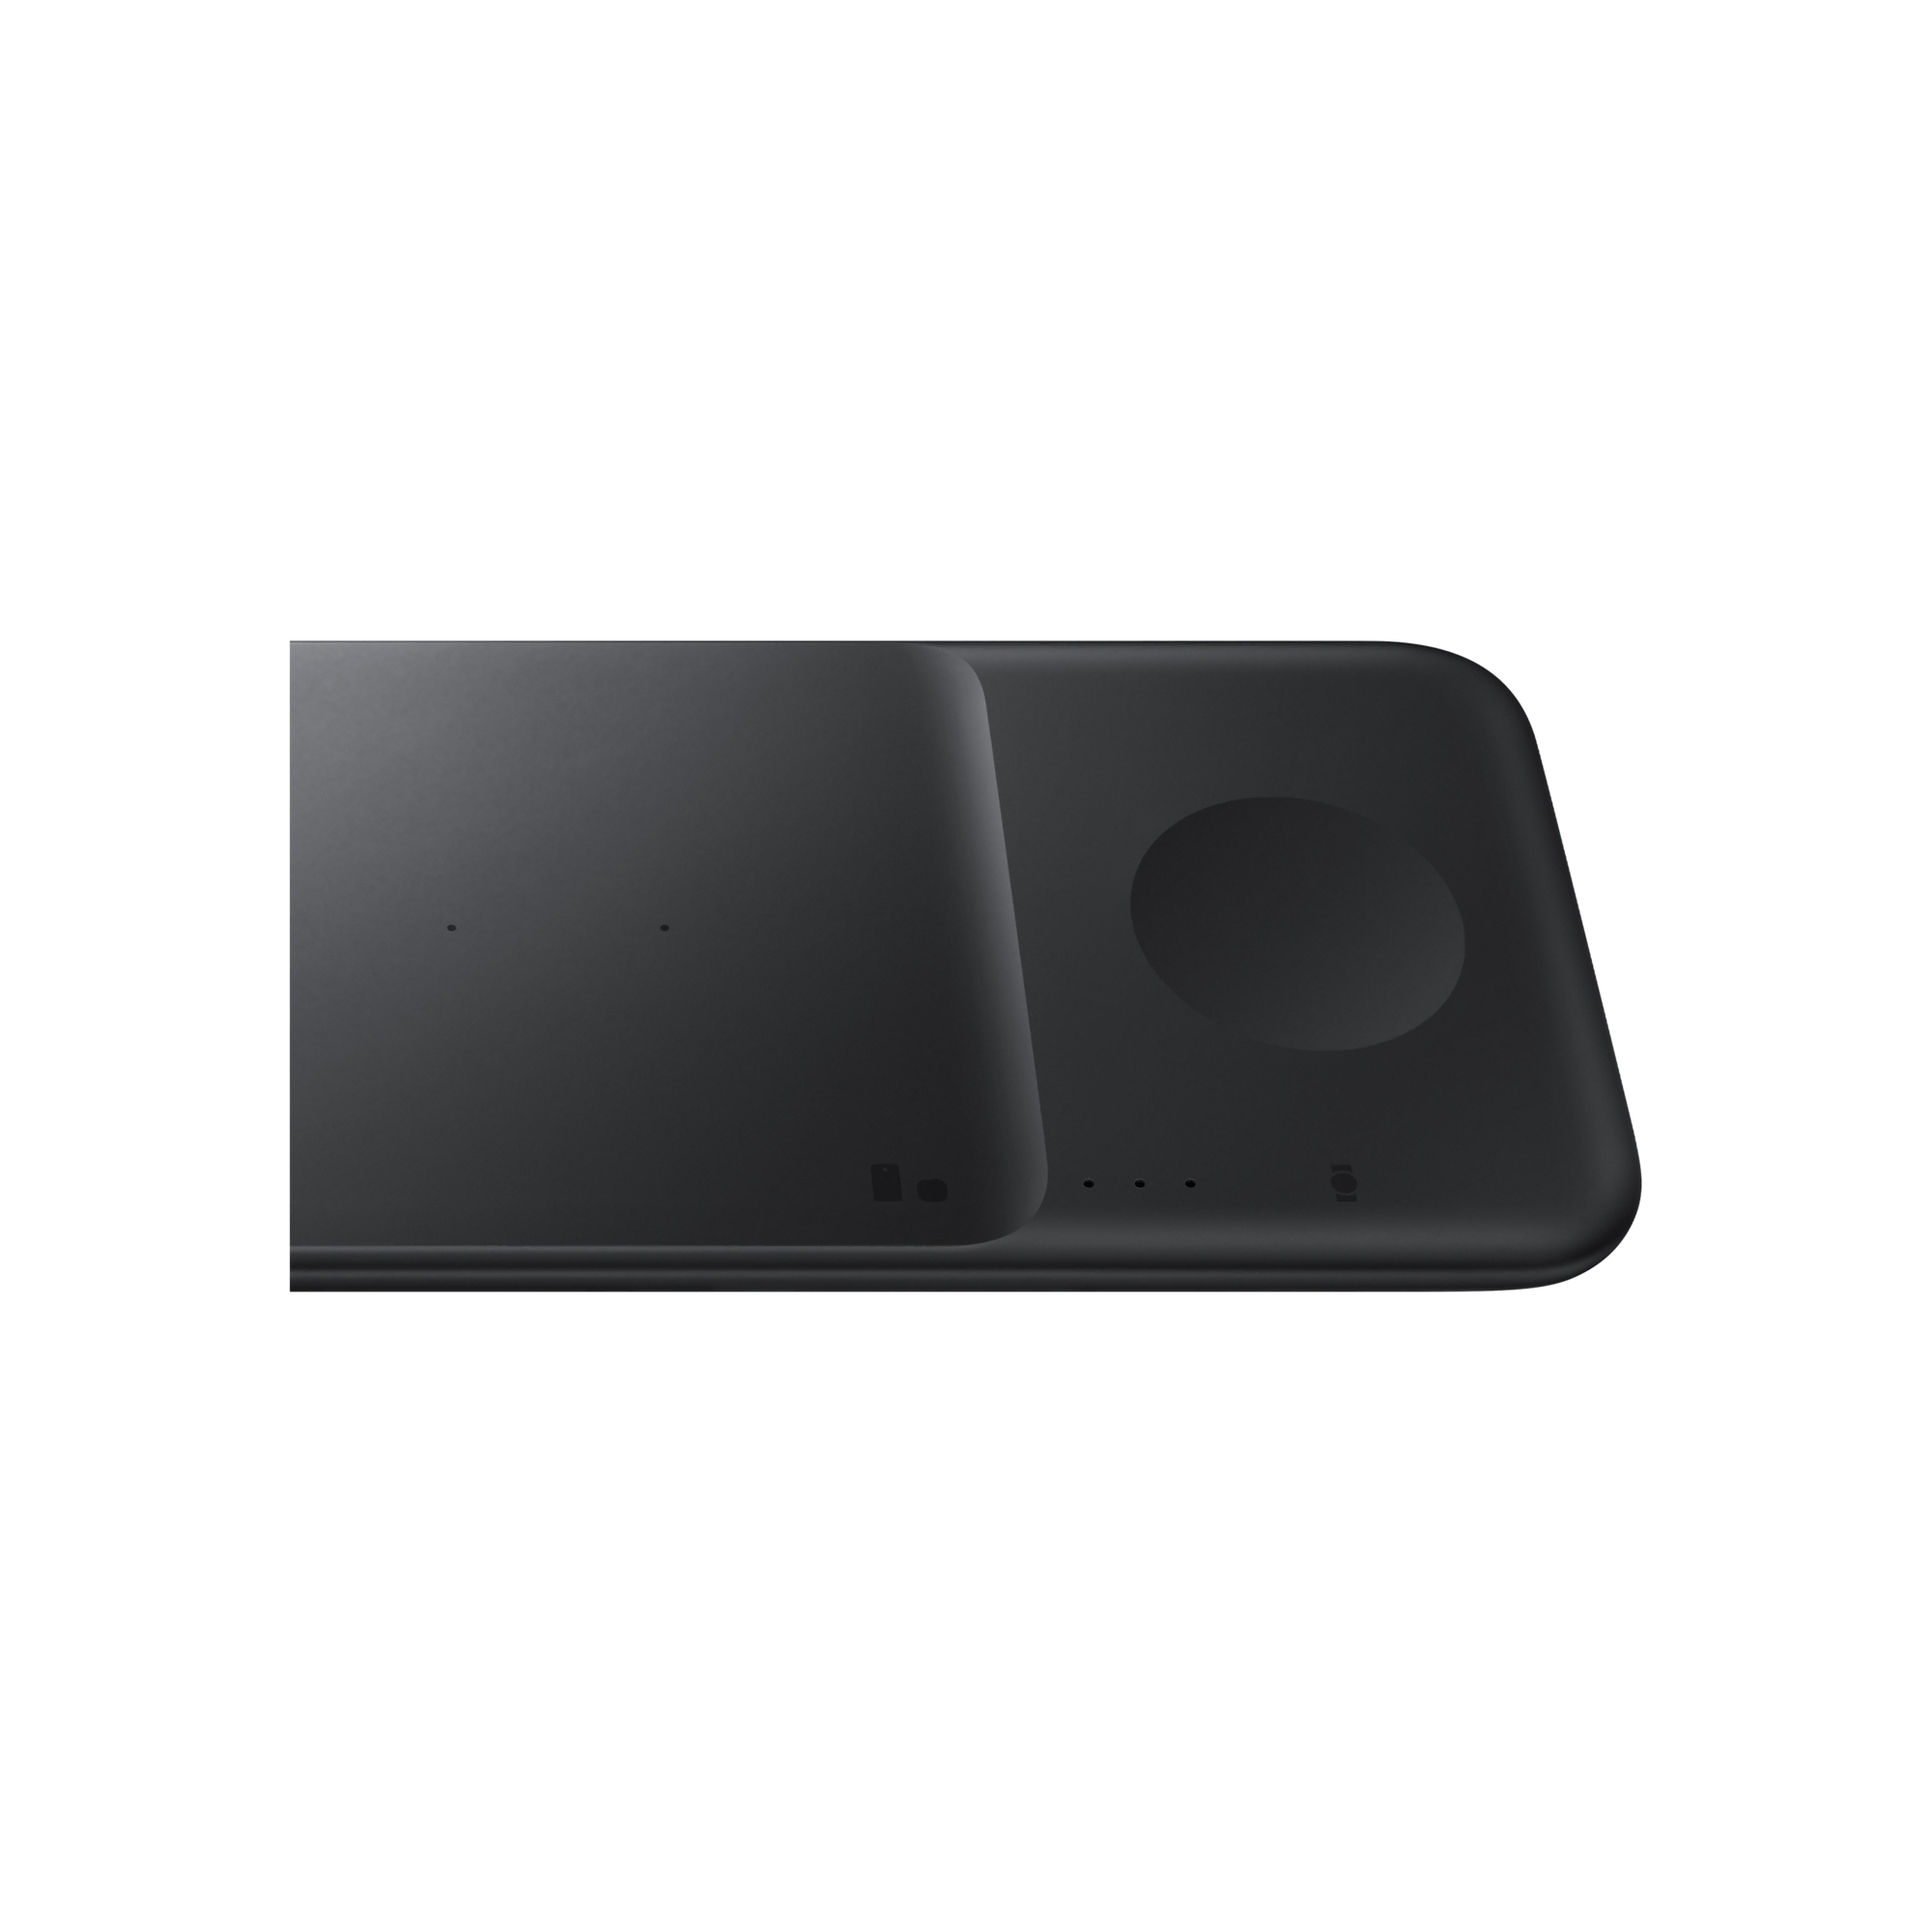 Samsung Kablosuz HızlıŞarj Üçlü25W-Siyah Cep Telefonu Aksesuar